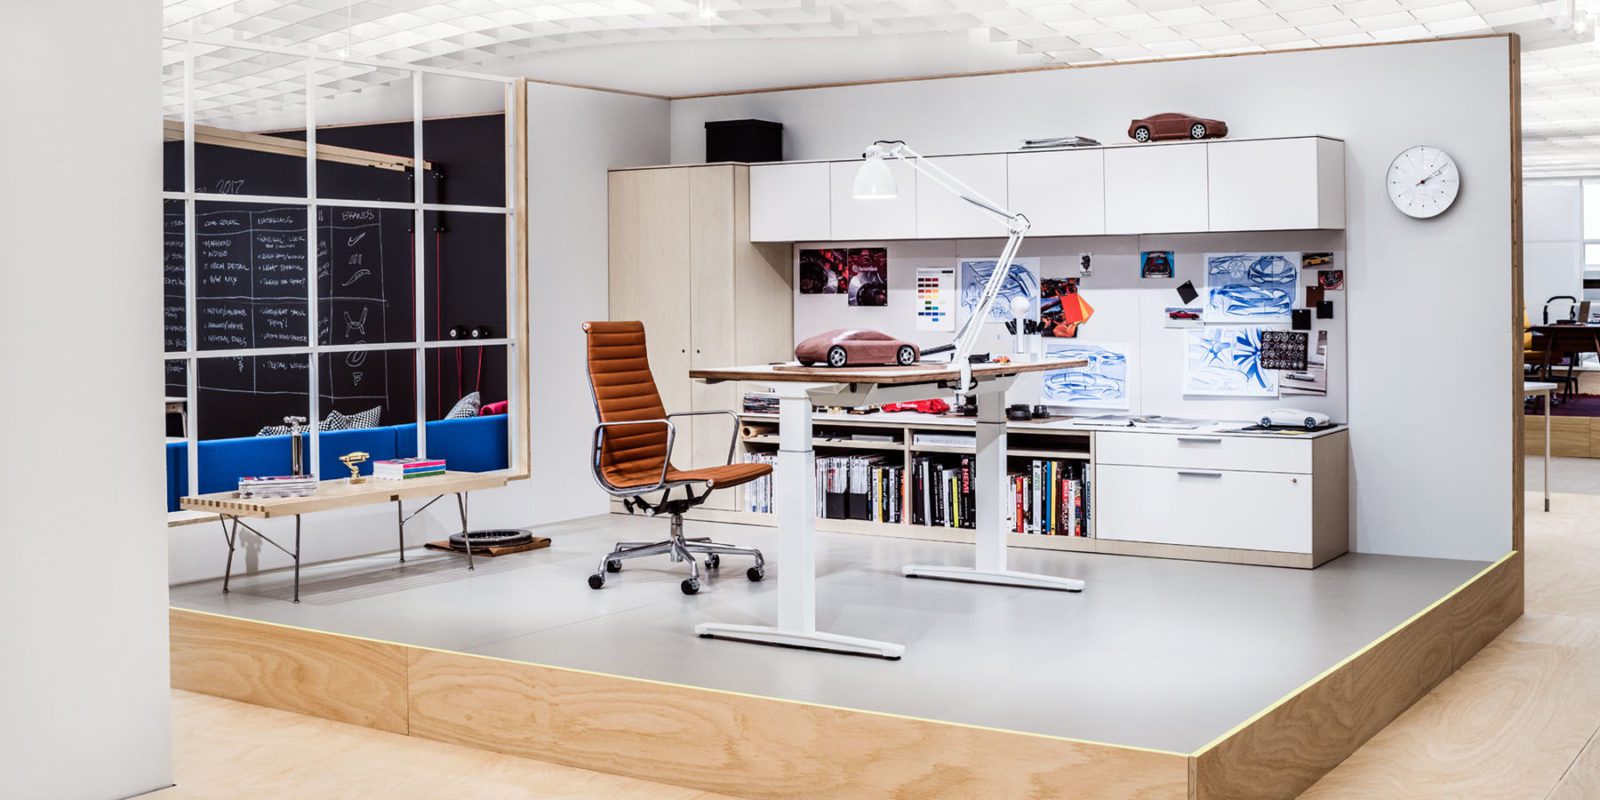 Herman Miller showroom with a desk arrangement